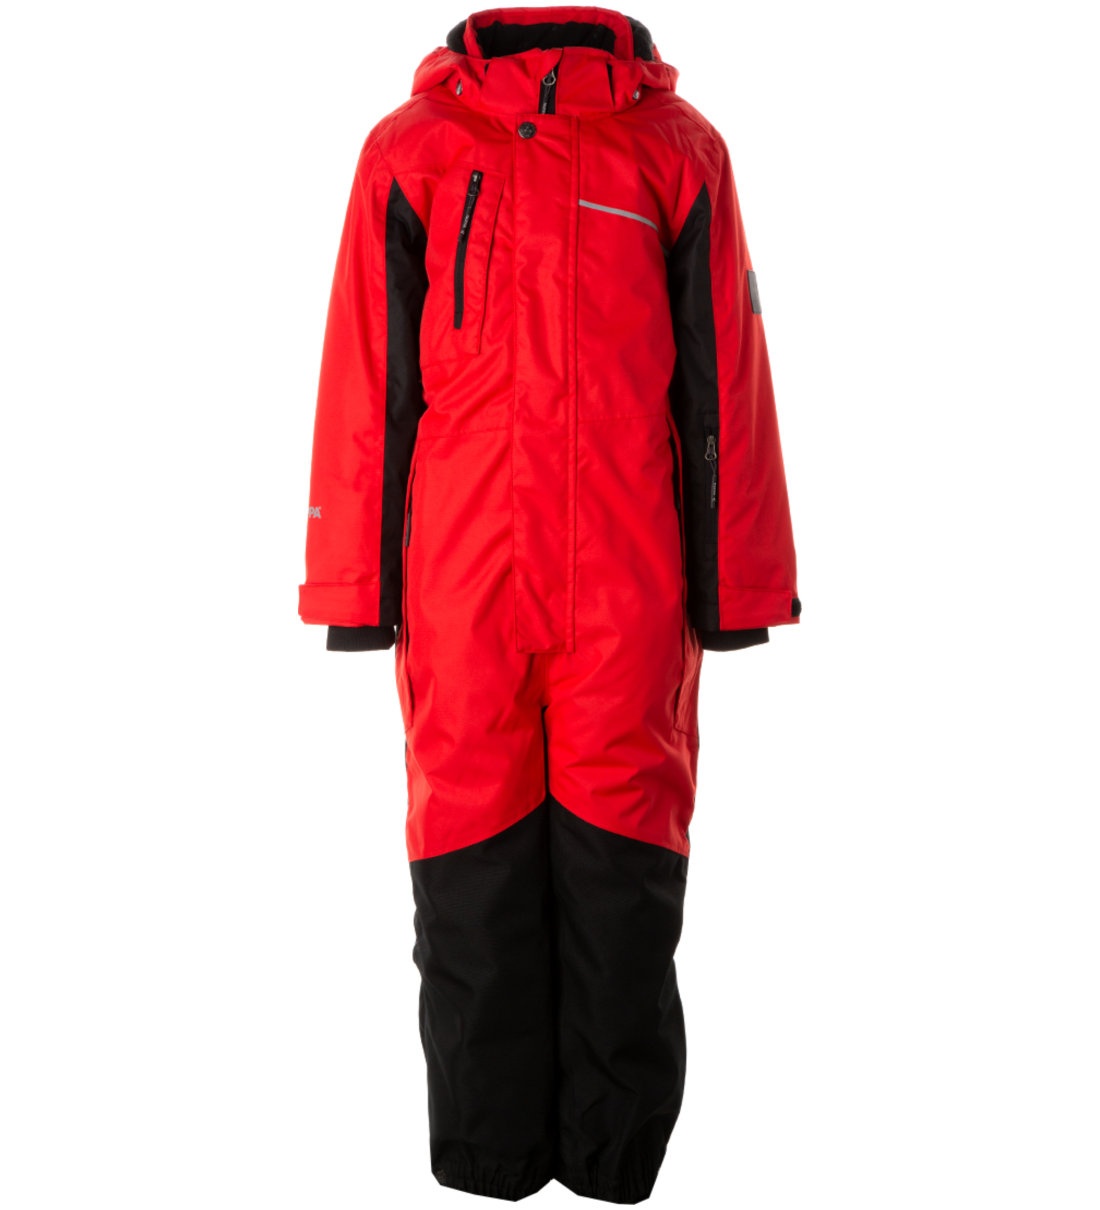 Комбинезон детский Huppa Mooley 3, красный, черный, 134 комплект верхней одежды детский huppa winter рисунок морская волна 128